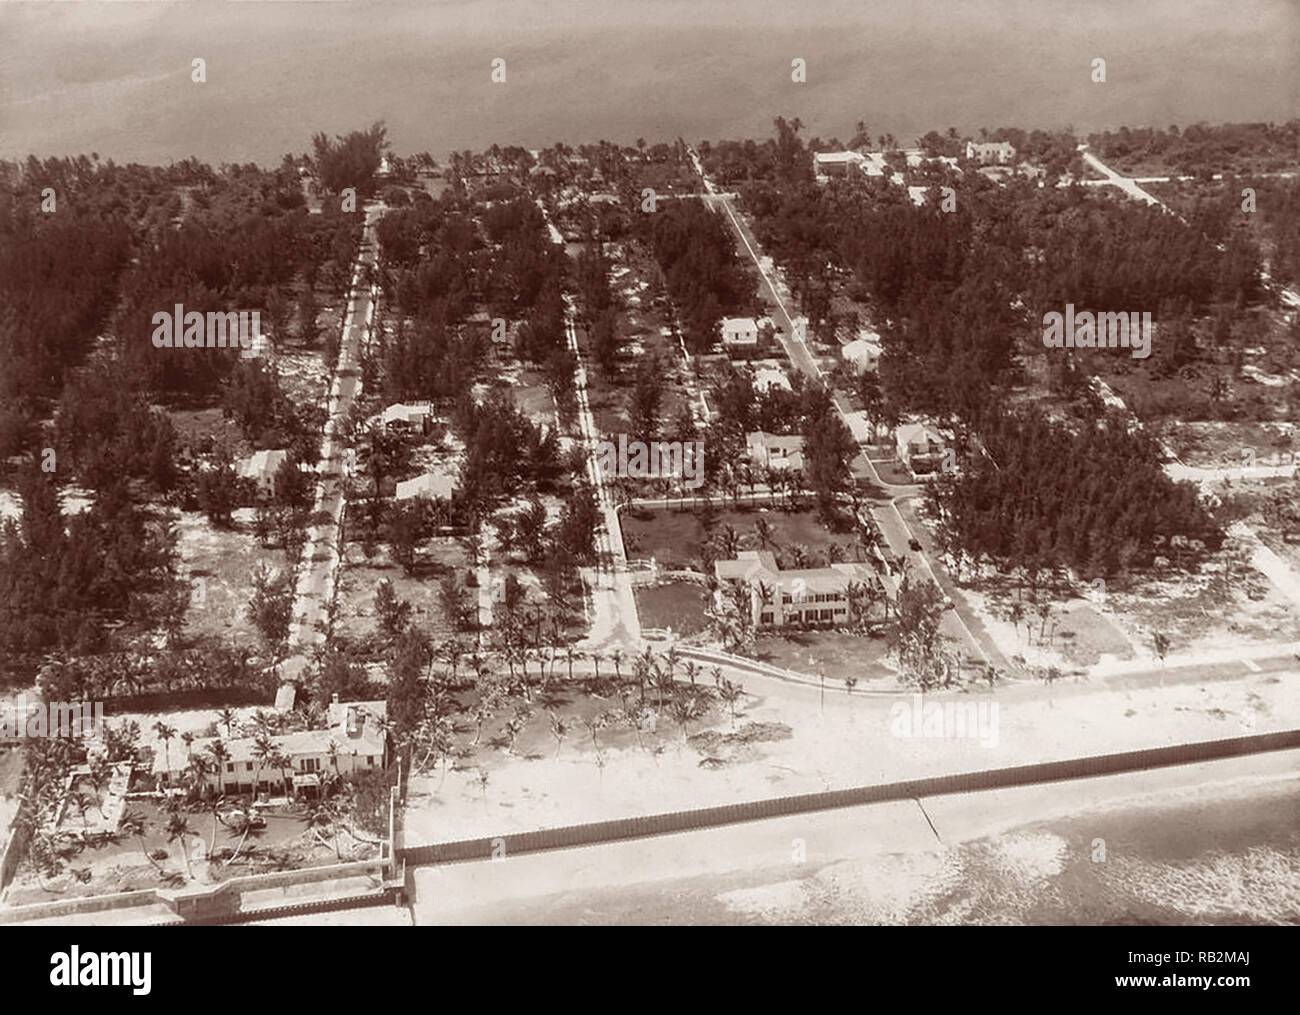 Vue aérienne de l'estate Kennedy et les propriétés avoisinantes à Palm Beach, en Floride, c1925. Joseph Kennedy ont acheté le Palm Beach home, conçu en 1923 par l'architecte Addison Mizner, pour 120 000 $ au cours de la Grande Dépression. Pendant la présidence de John F. Kennedy, le composé connu sous le nom de "maison blanche" d'hiver. Banque D'Images